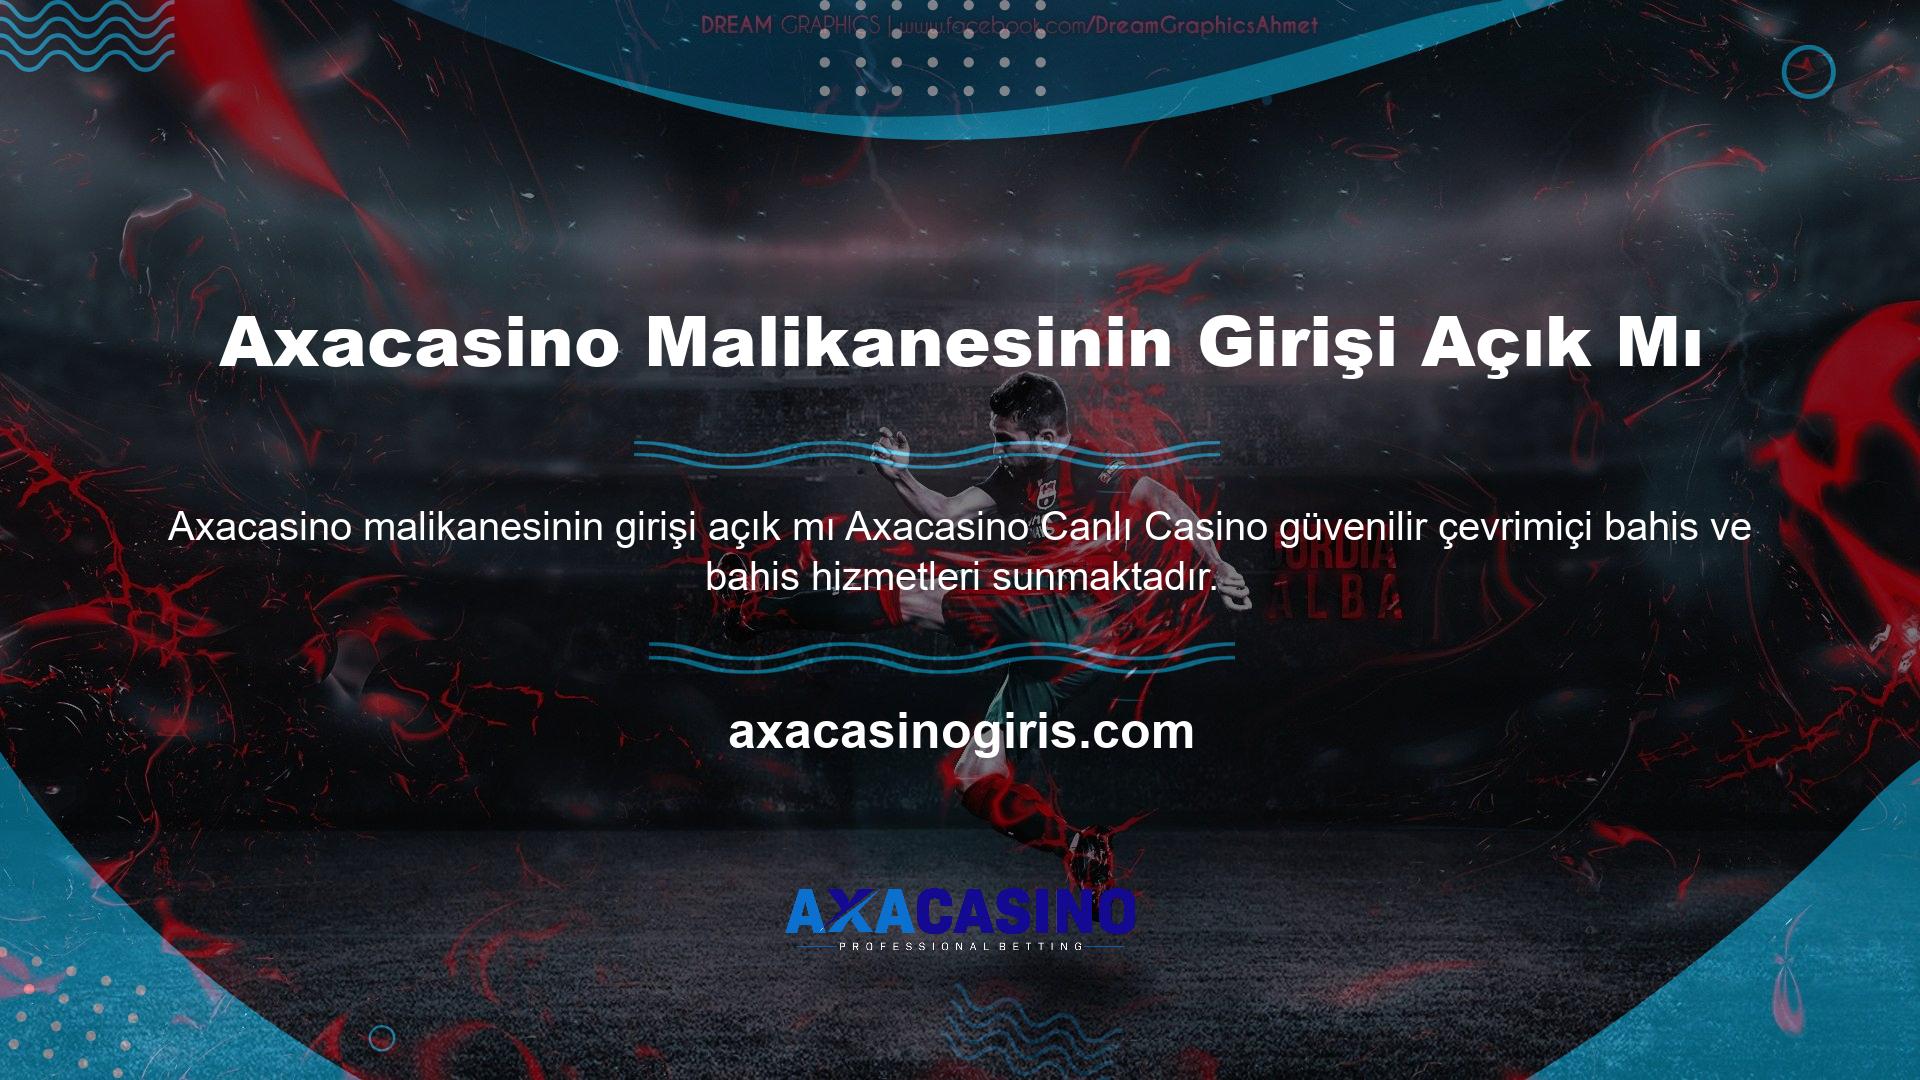 Axacasino Villasının girişi açık mı? Spor bahisleri ve casino sitesi